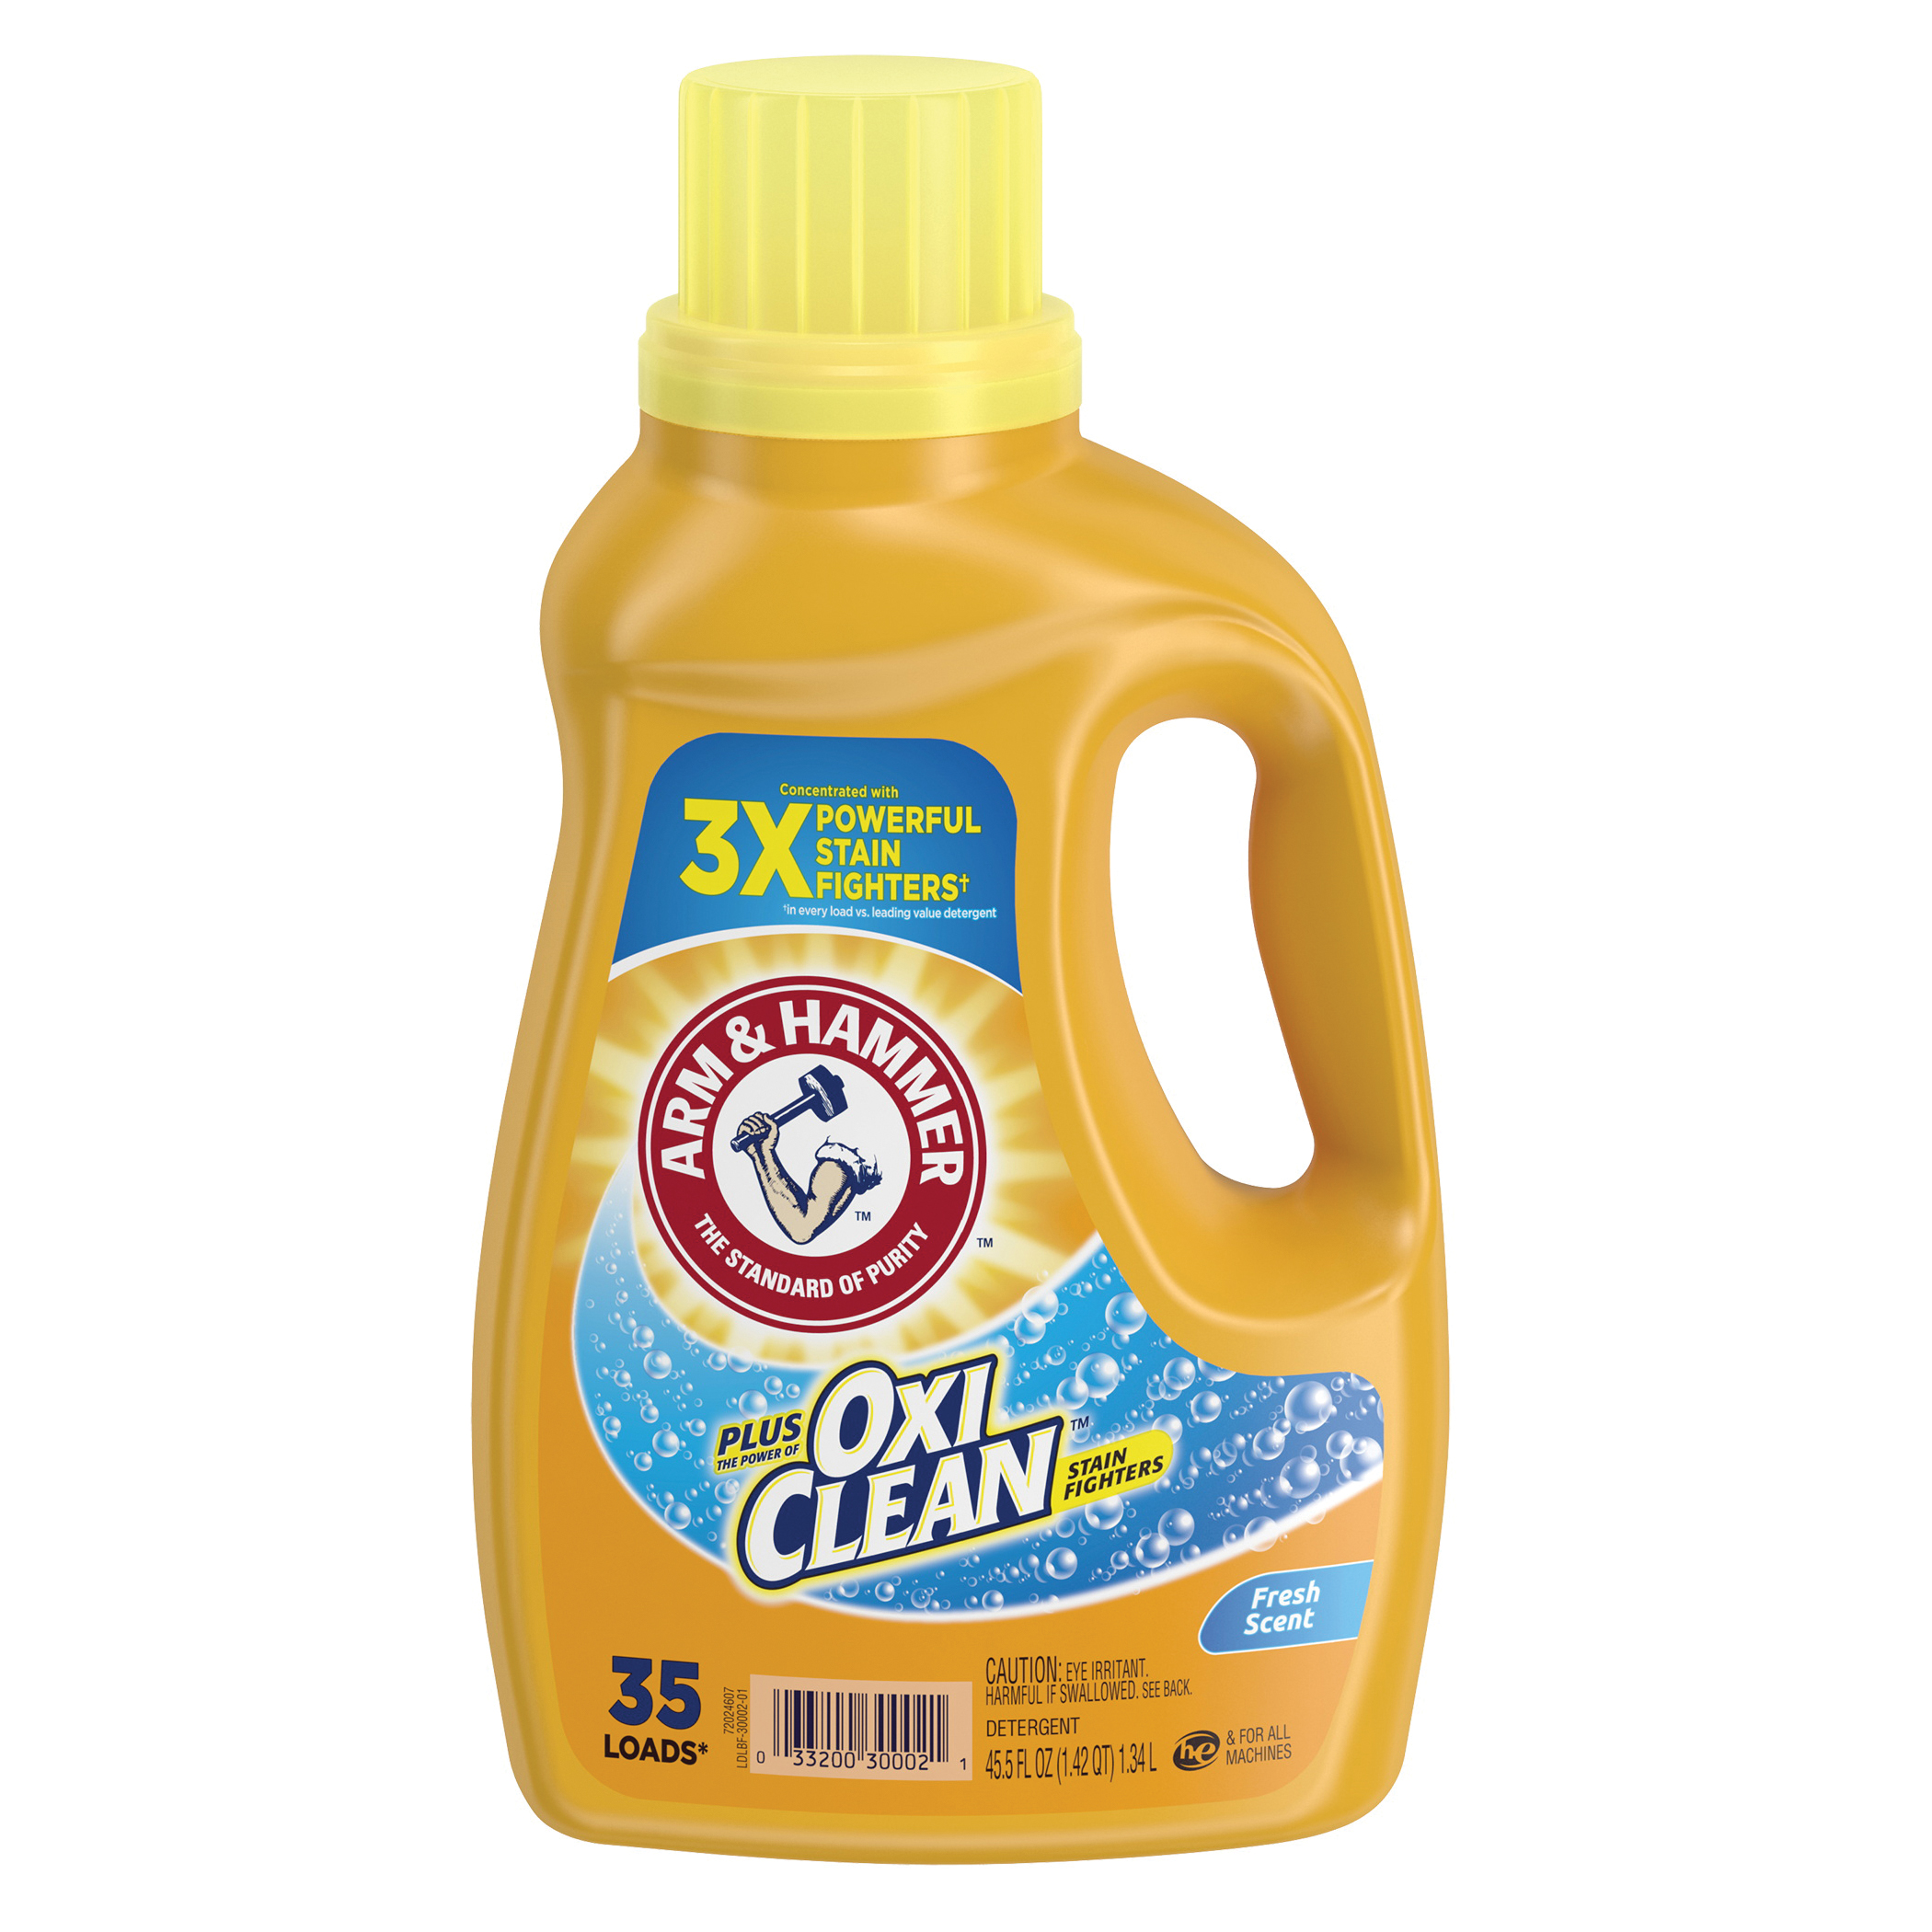 Plus OxiClean 97542 Laundry Detergent, 62.5 oz Bottle, Liquid, Clean Fresh